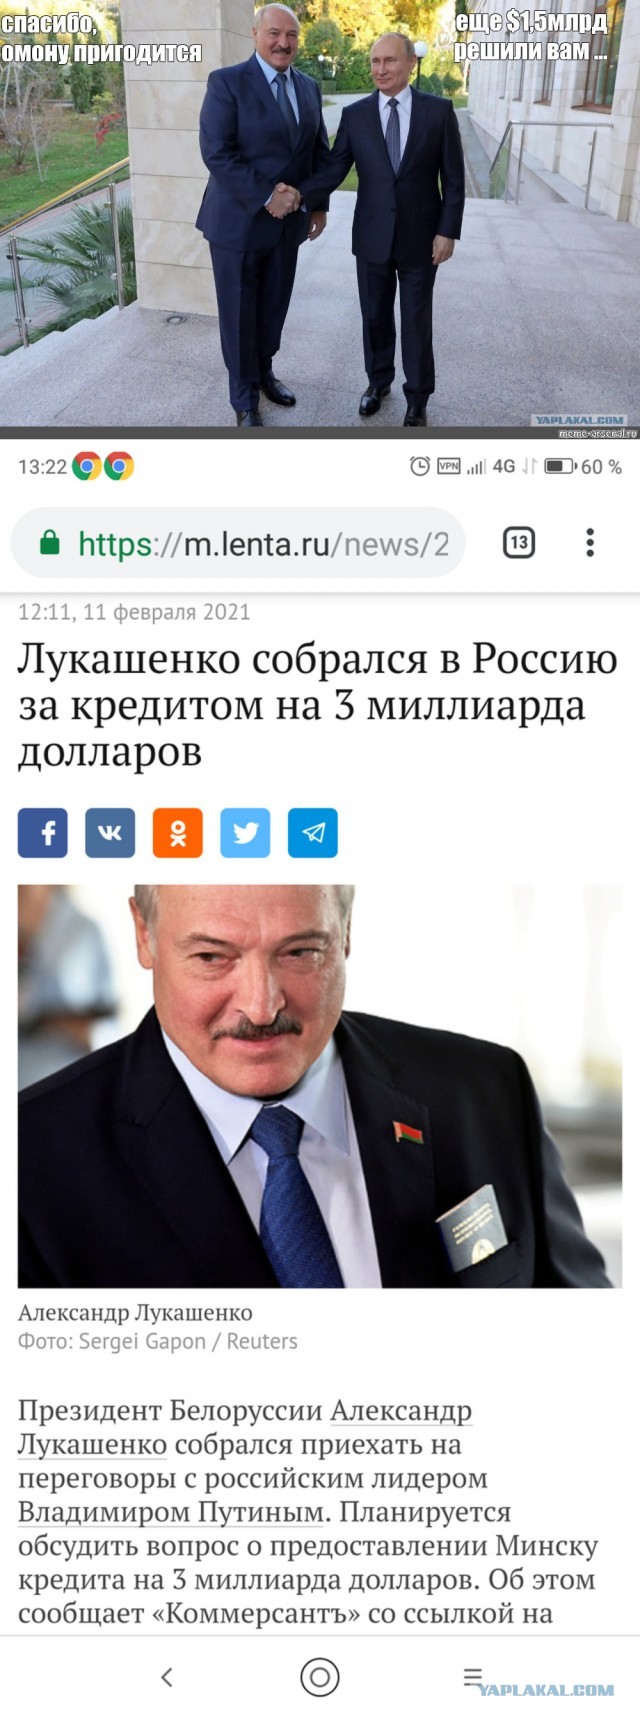 Появляются подробности будущей встречи Лукашенко и Путина: «Кредит от $3 млрд»